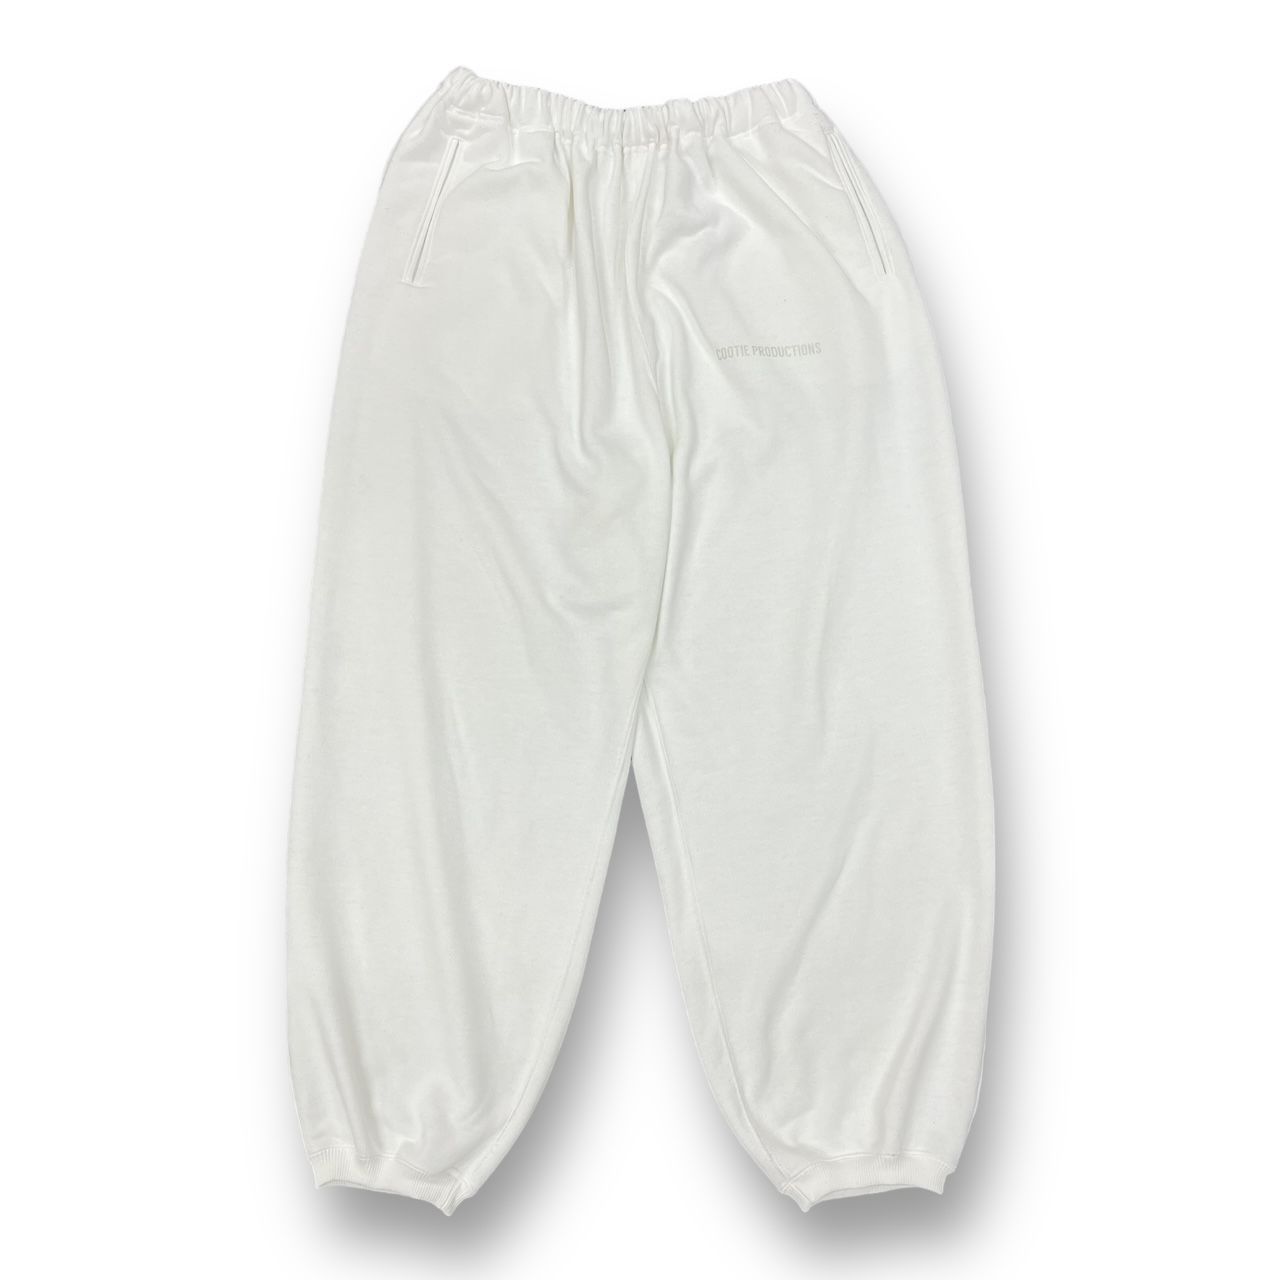 あ様専用 定価25300円 COOTIE PRODUCTIONS 22AW Dry Tech Sweat Pants ドライテック スウェットパンツ  クーティー CTE-22S123 M